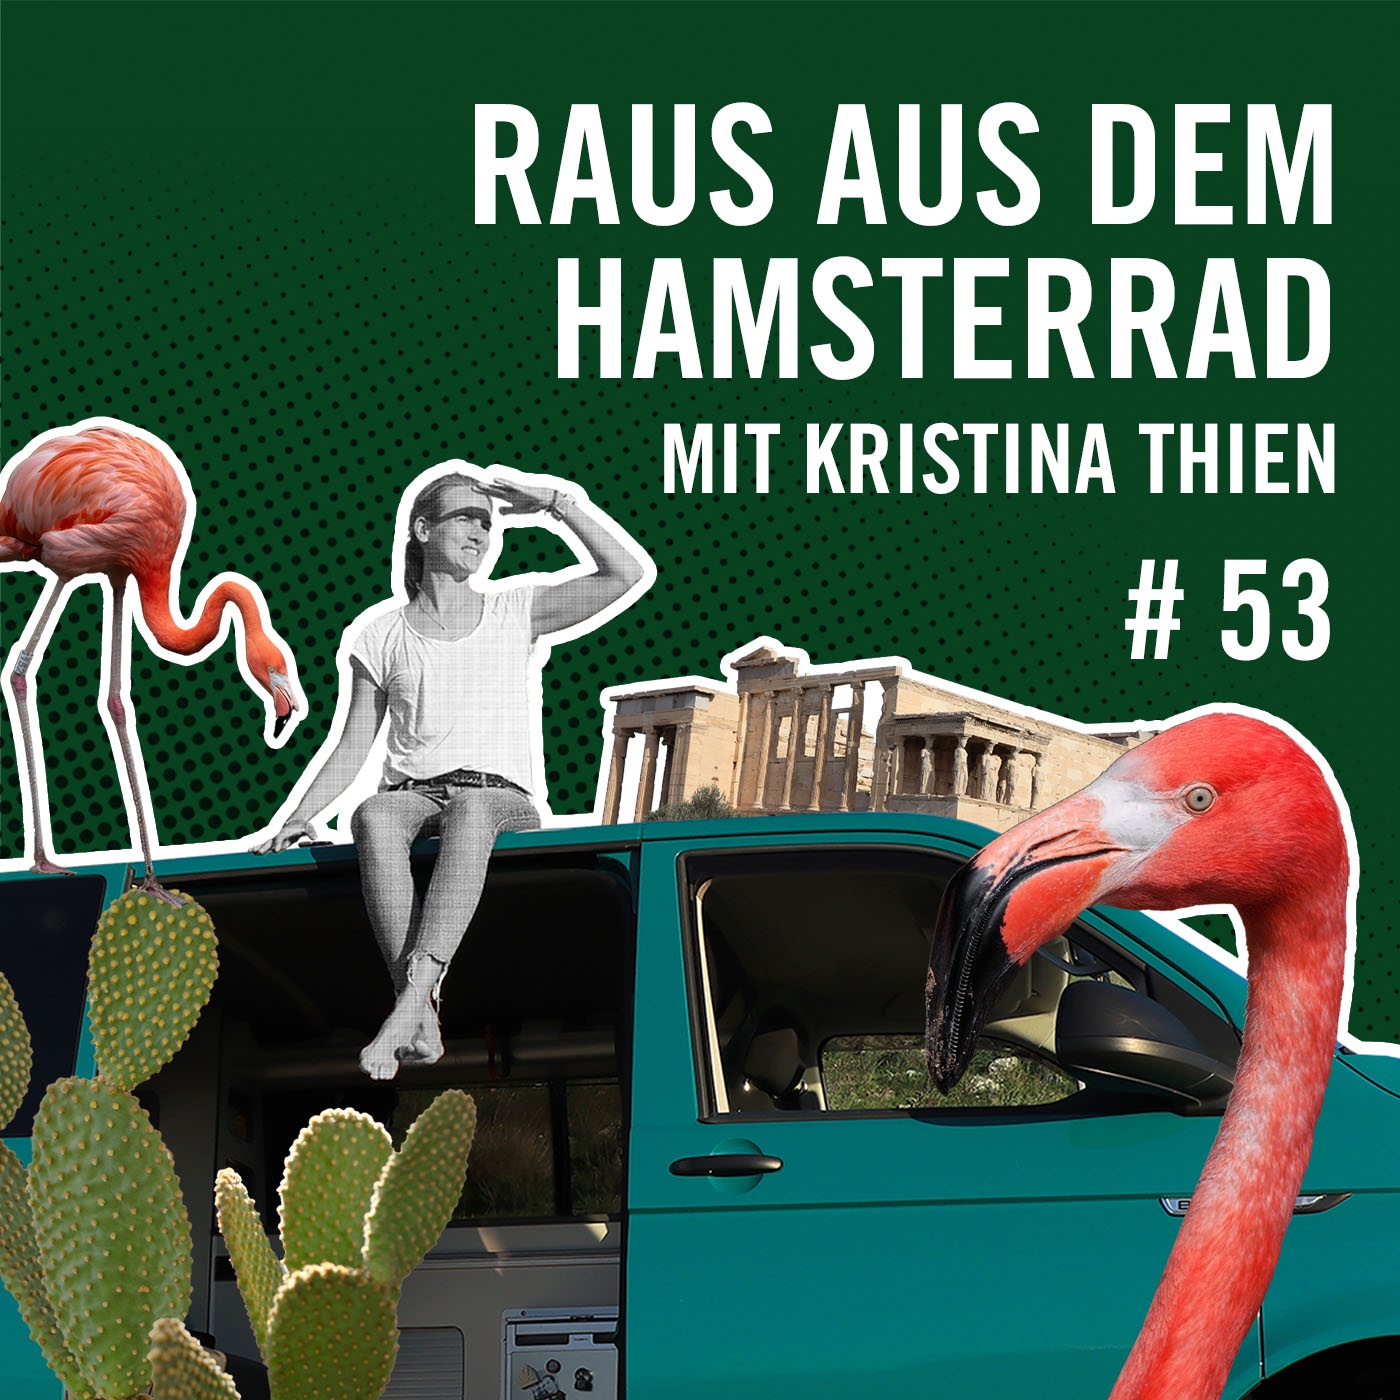 Raus aus dem Hamsterrad mit Kristina Thien #53